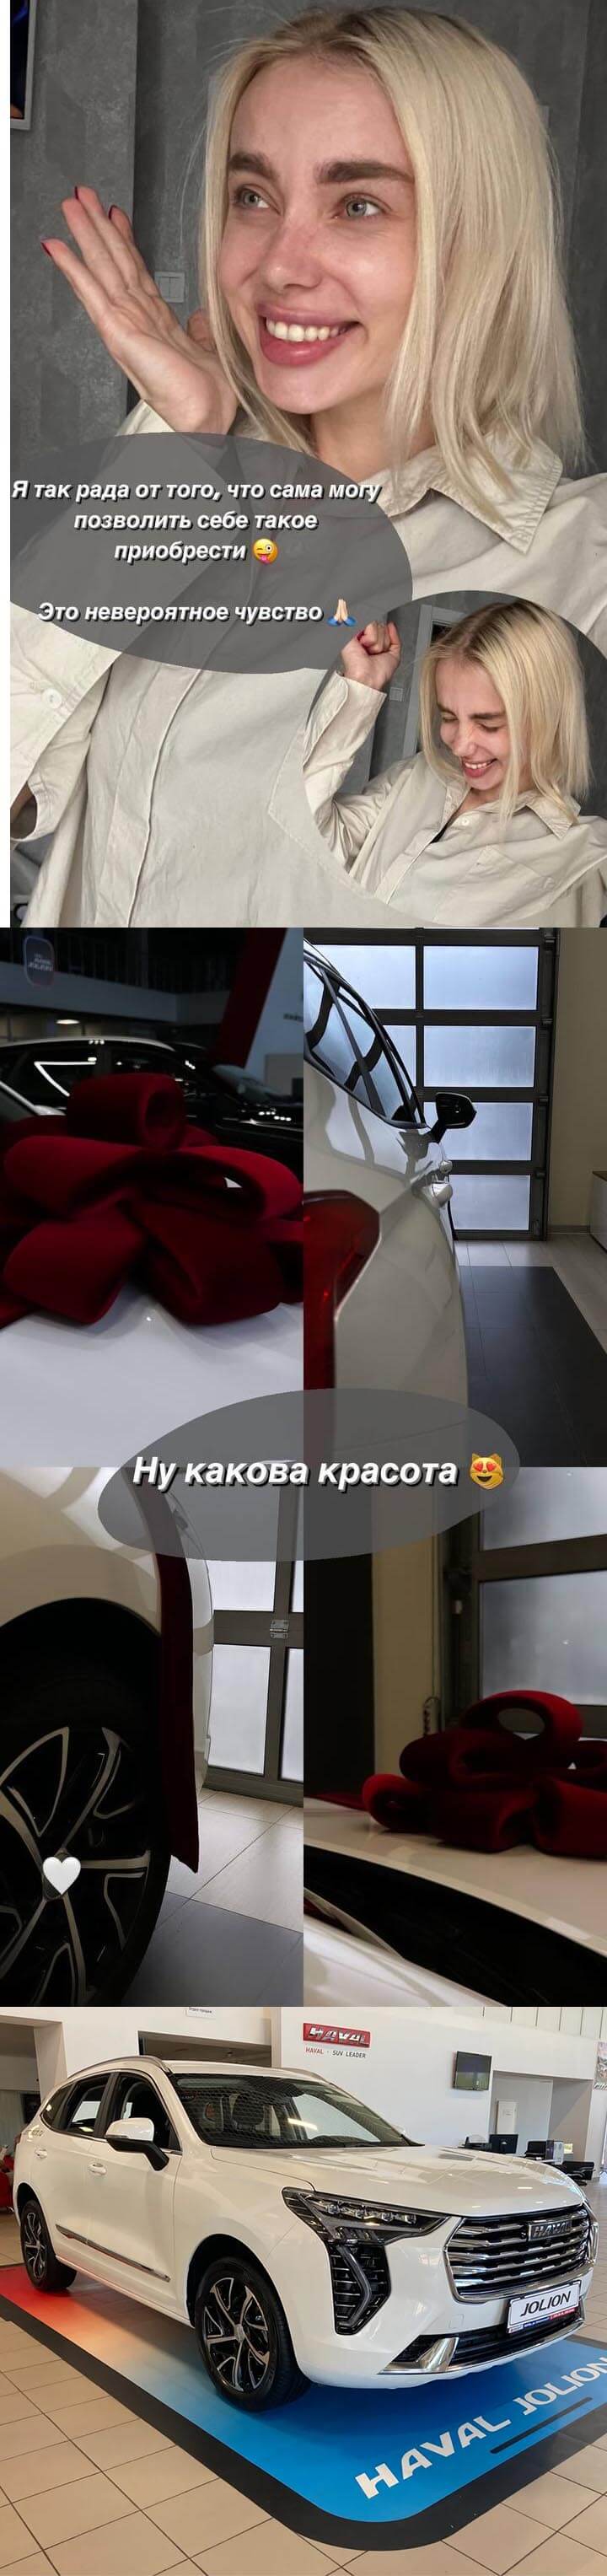 Фото новой машины Александры Паршиной вконтакте